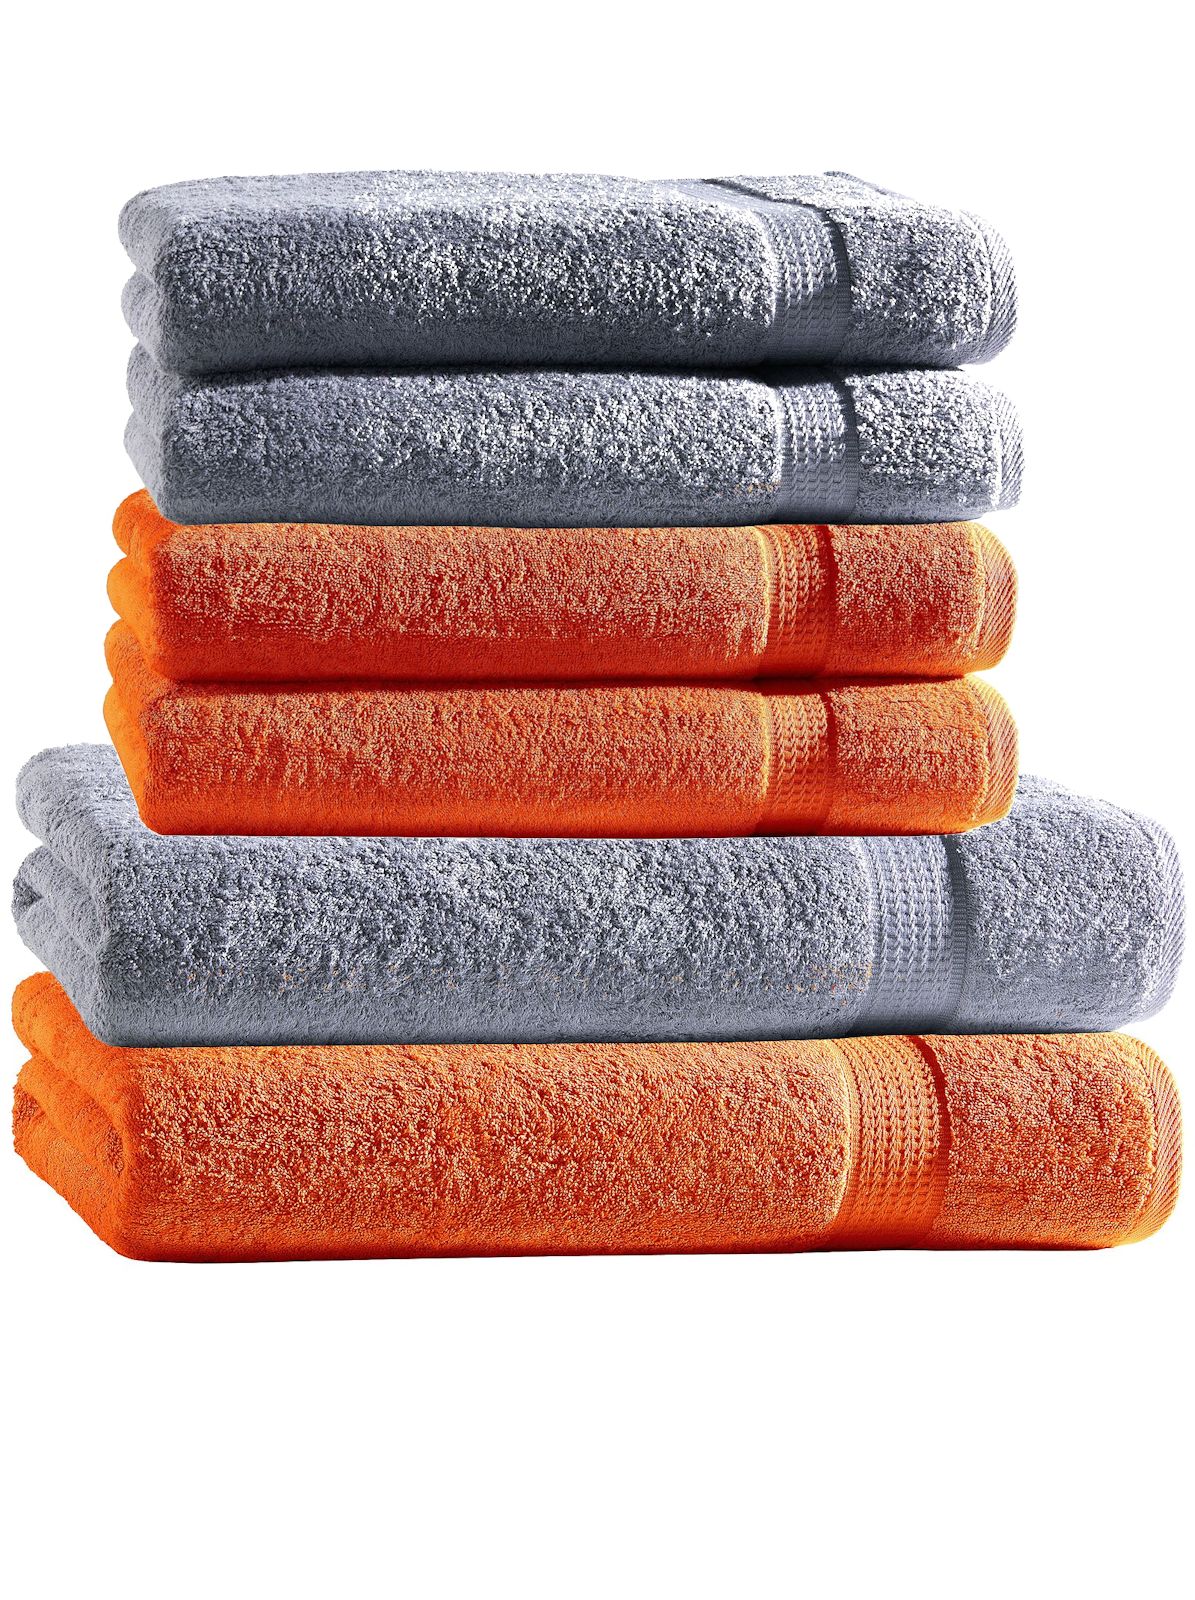 Handtuch Set 6tlg. 4 Handtücher 2 Duschtücher Duschtuch Baumwolle 2 Farben  Mix | eBay